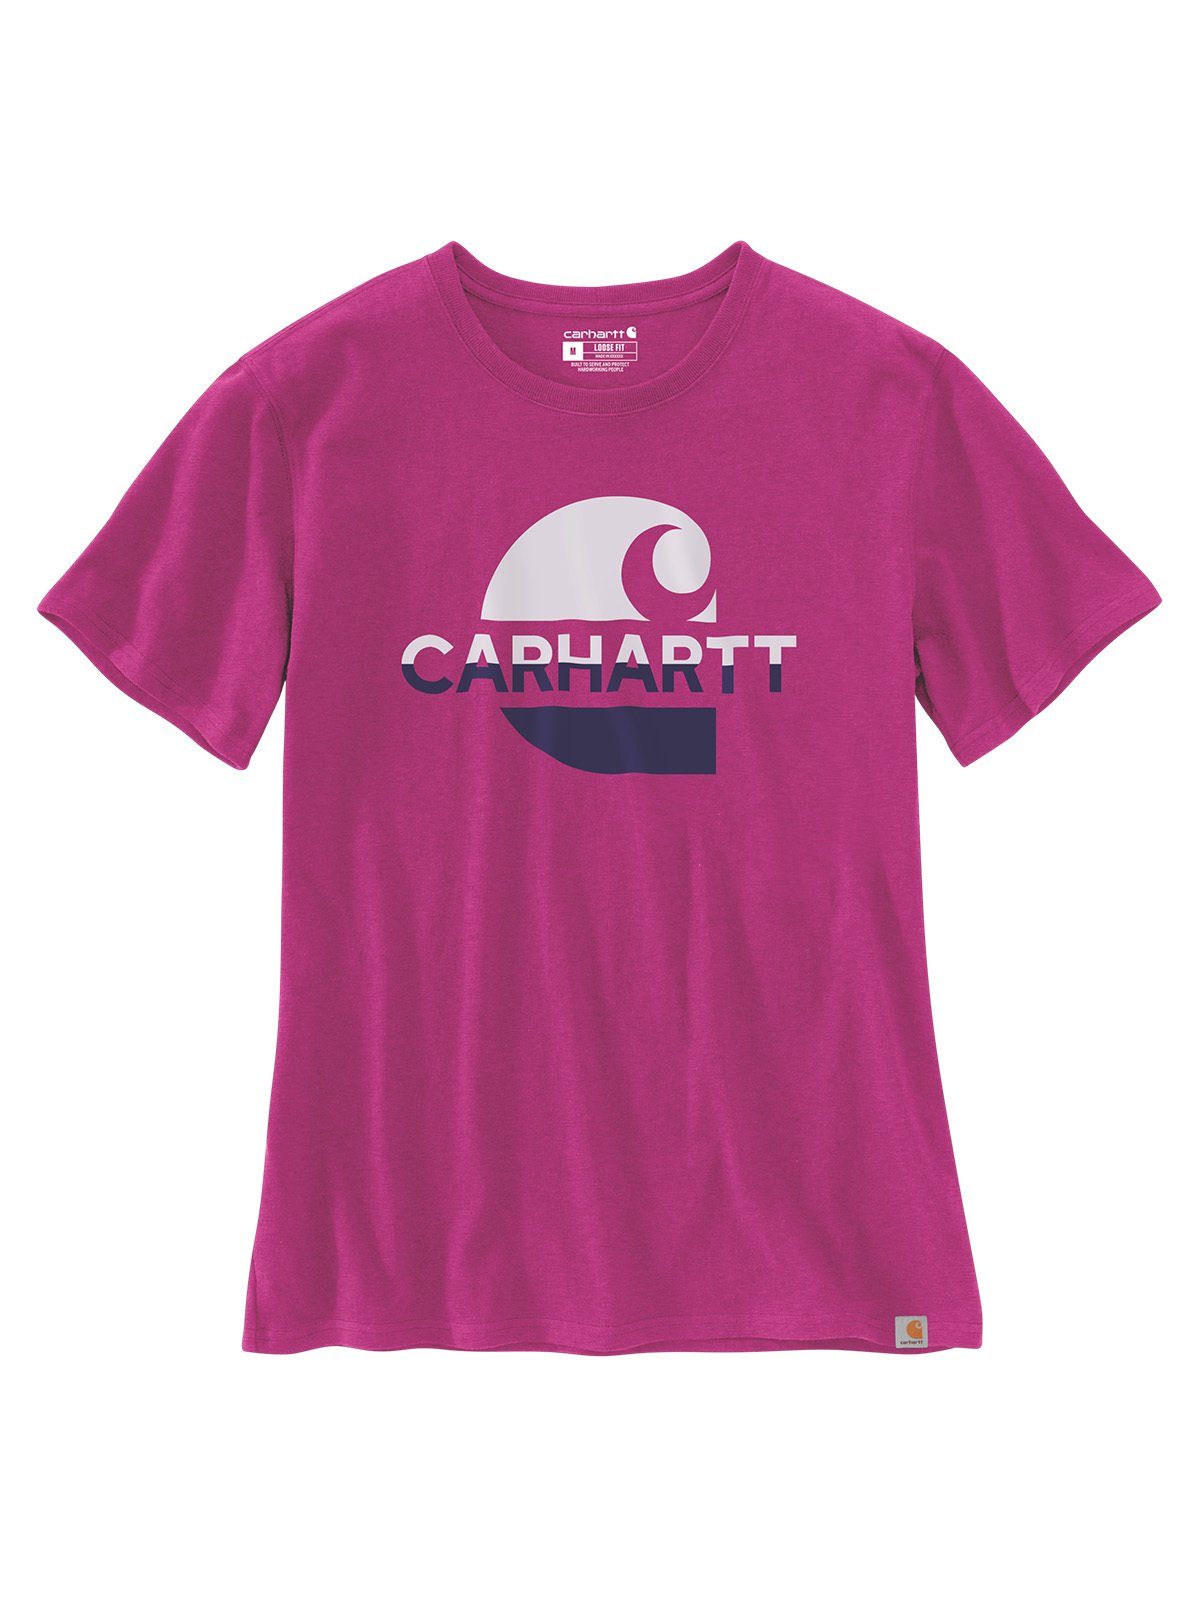 Carhartt Damen Carhartt Graphic magenta pink agate T-Shirt T-Shirt